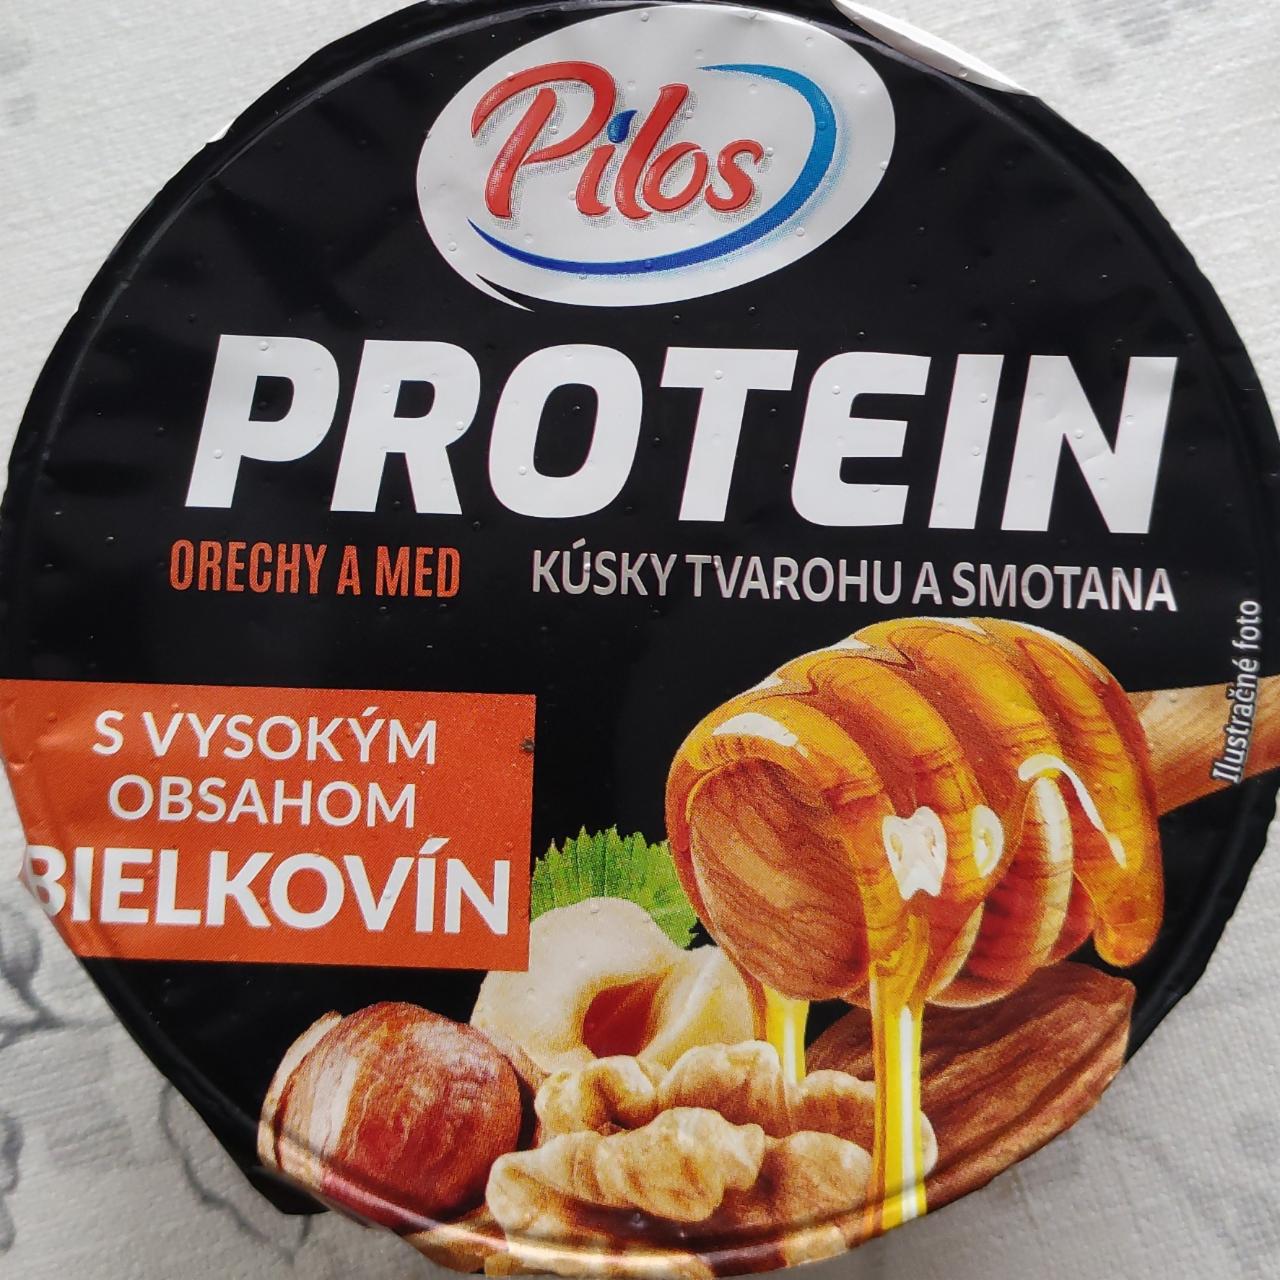 Fotografie - Protein Kúsky tvarohu a smotana Orechy a med Pilos